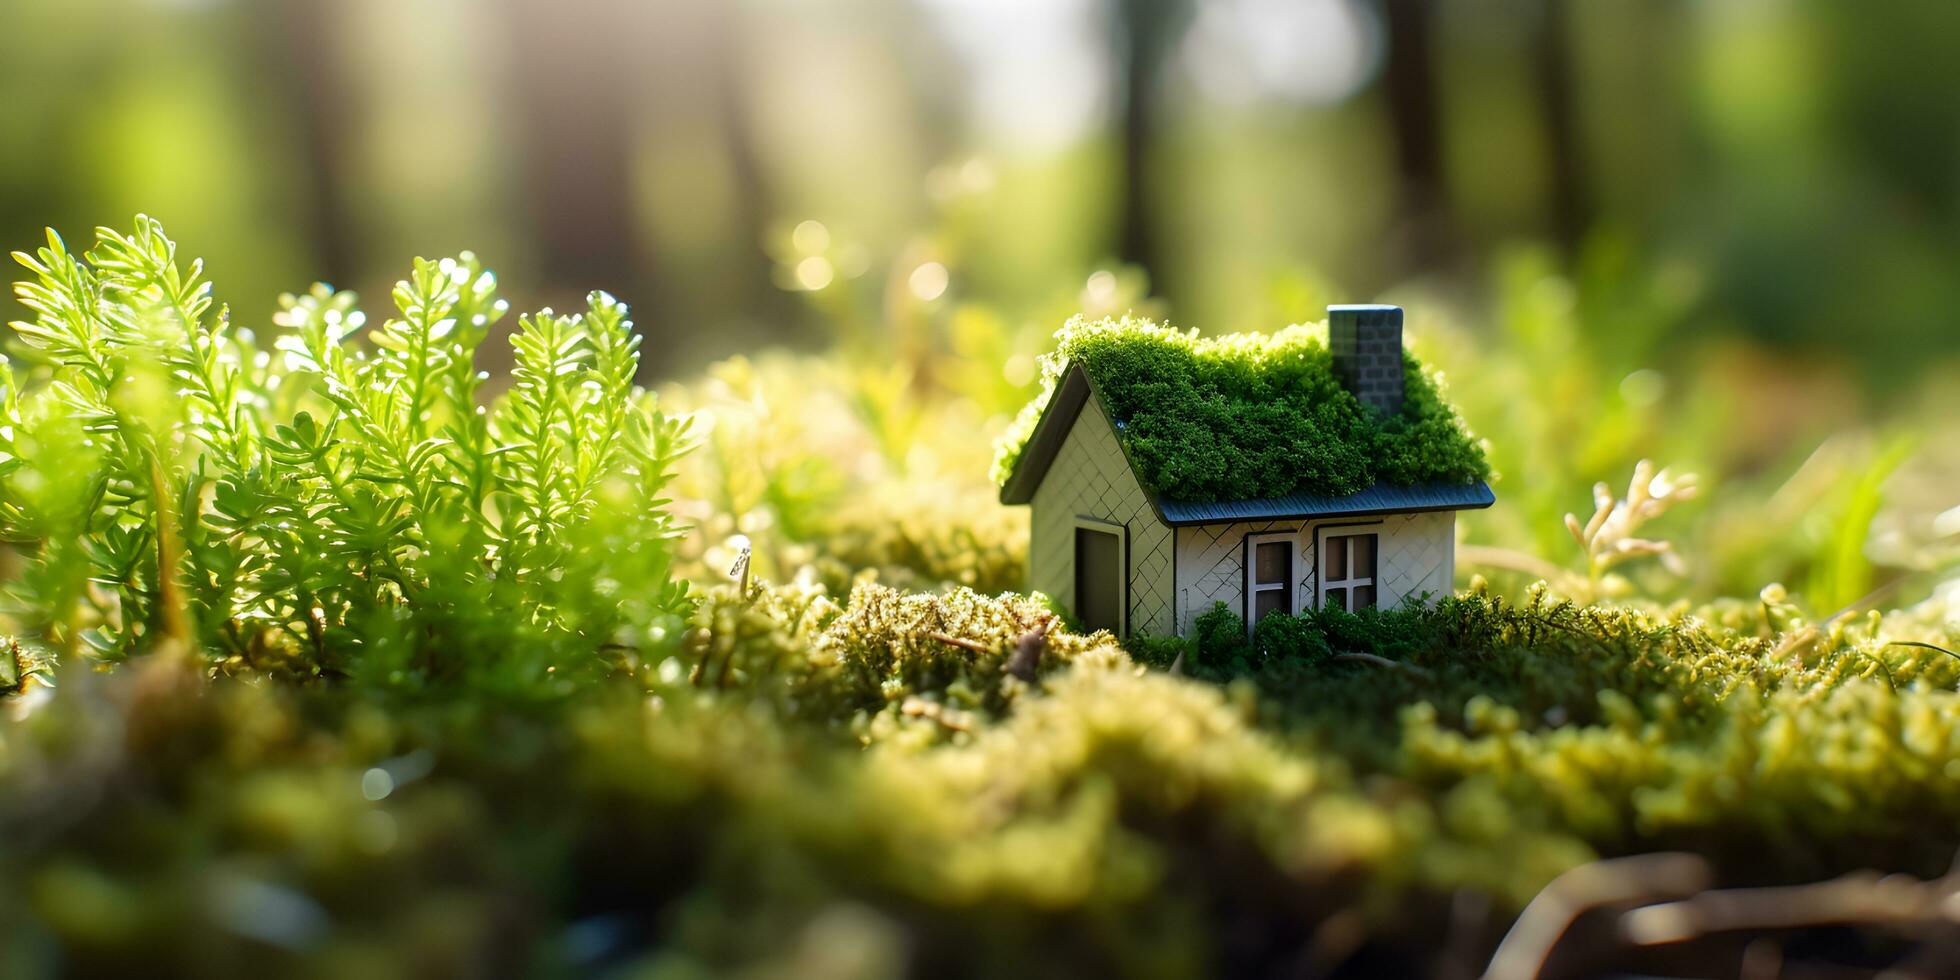 éco maison dans vert environnement. miniture maison sur herbe. photo